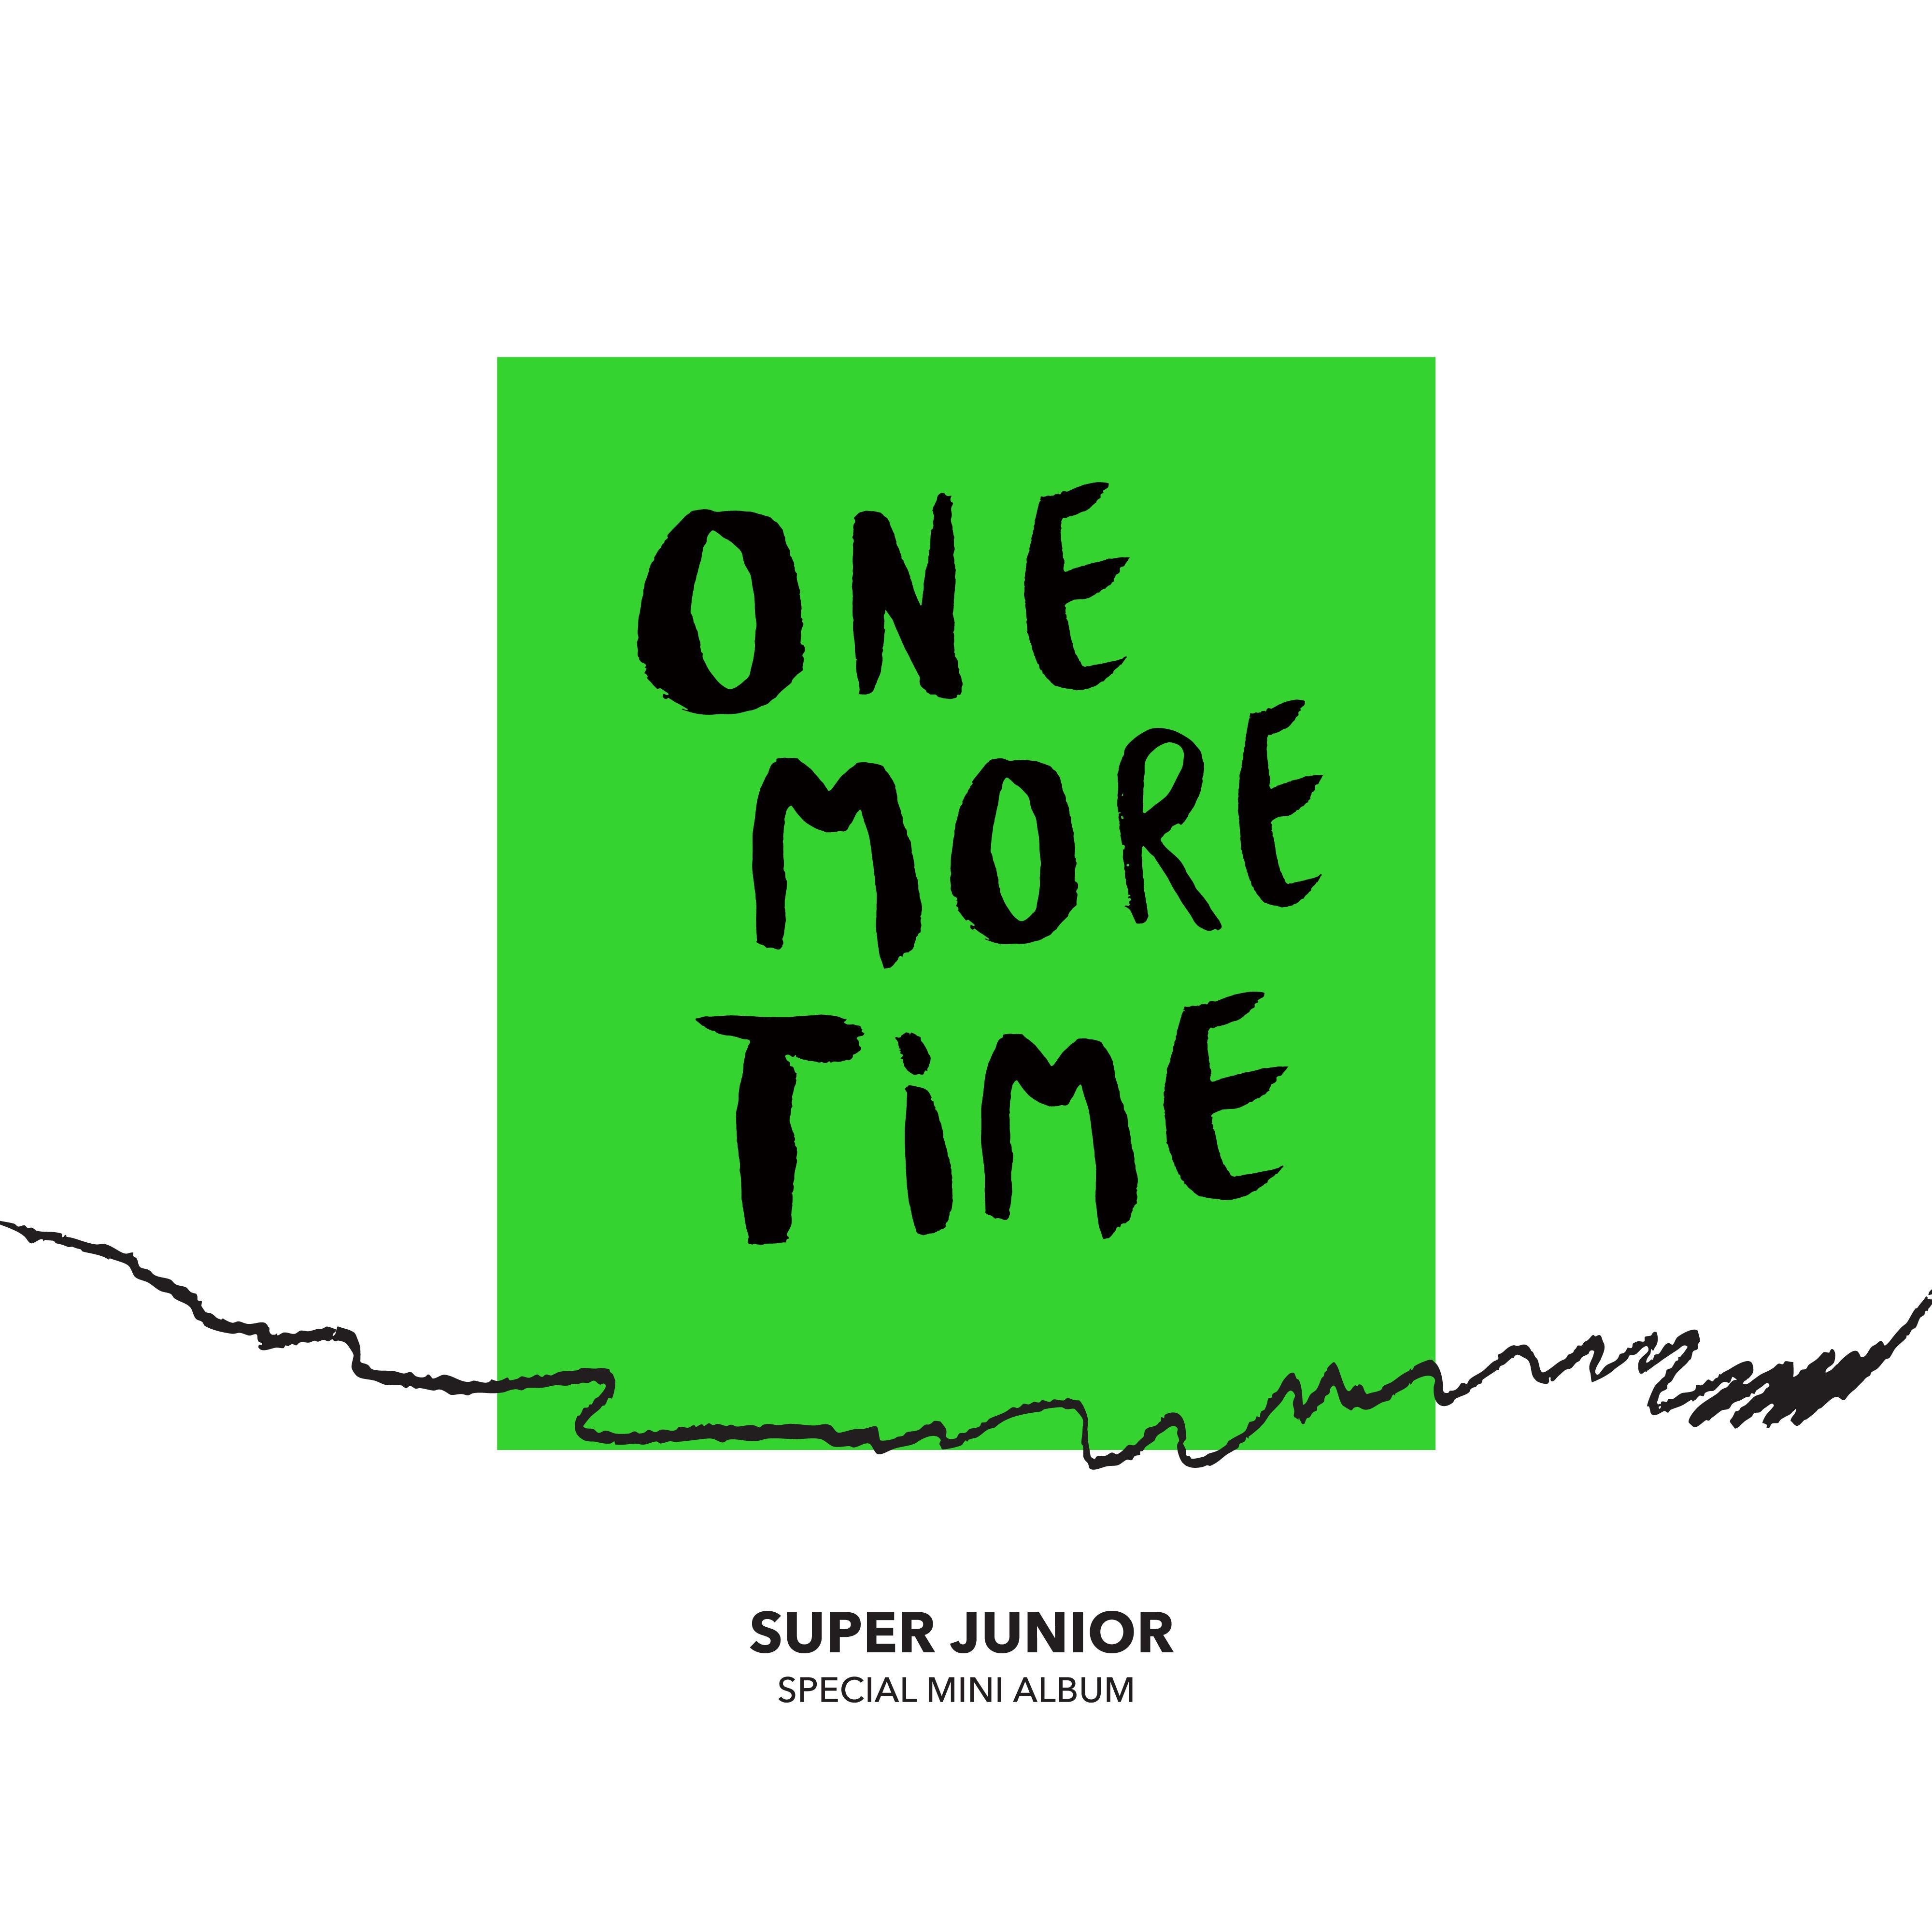 Ahora Te Puedes Marchar歌词 歌手Super Junior-专辑One More Time - Special Mini Album-单曲《Ahora Te Puedes Marchar》LRC歌词下载